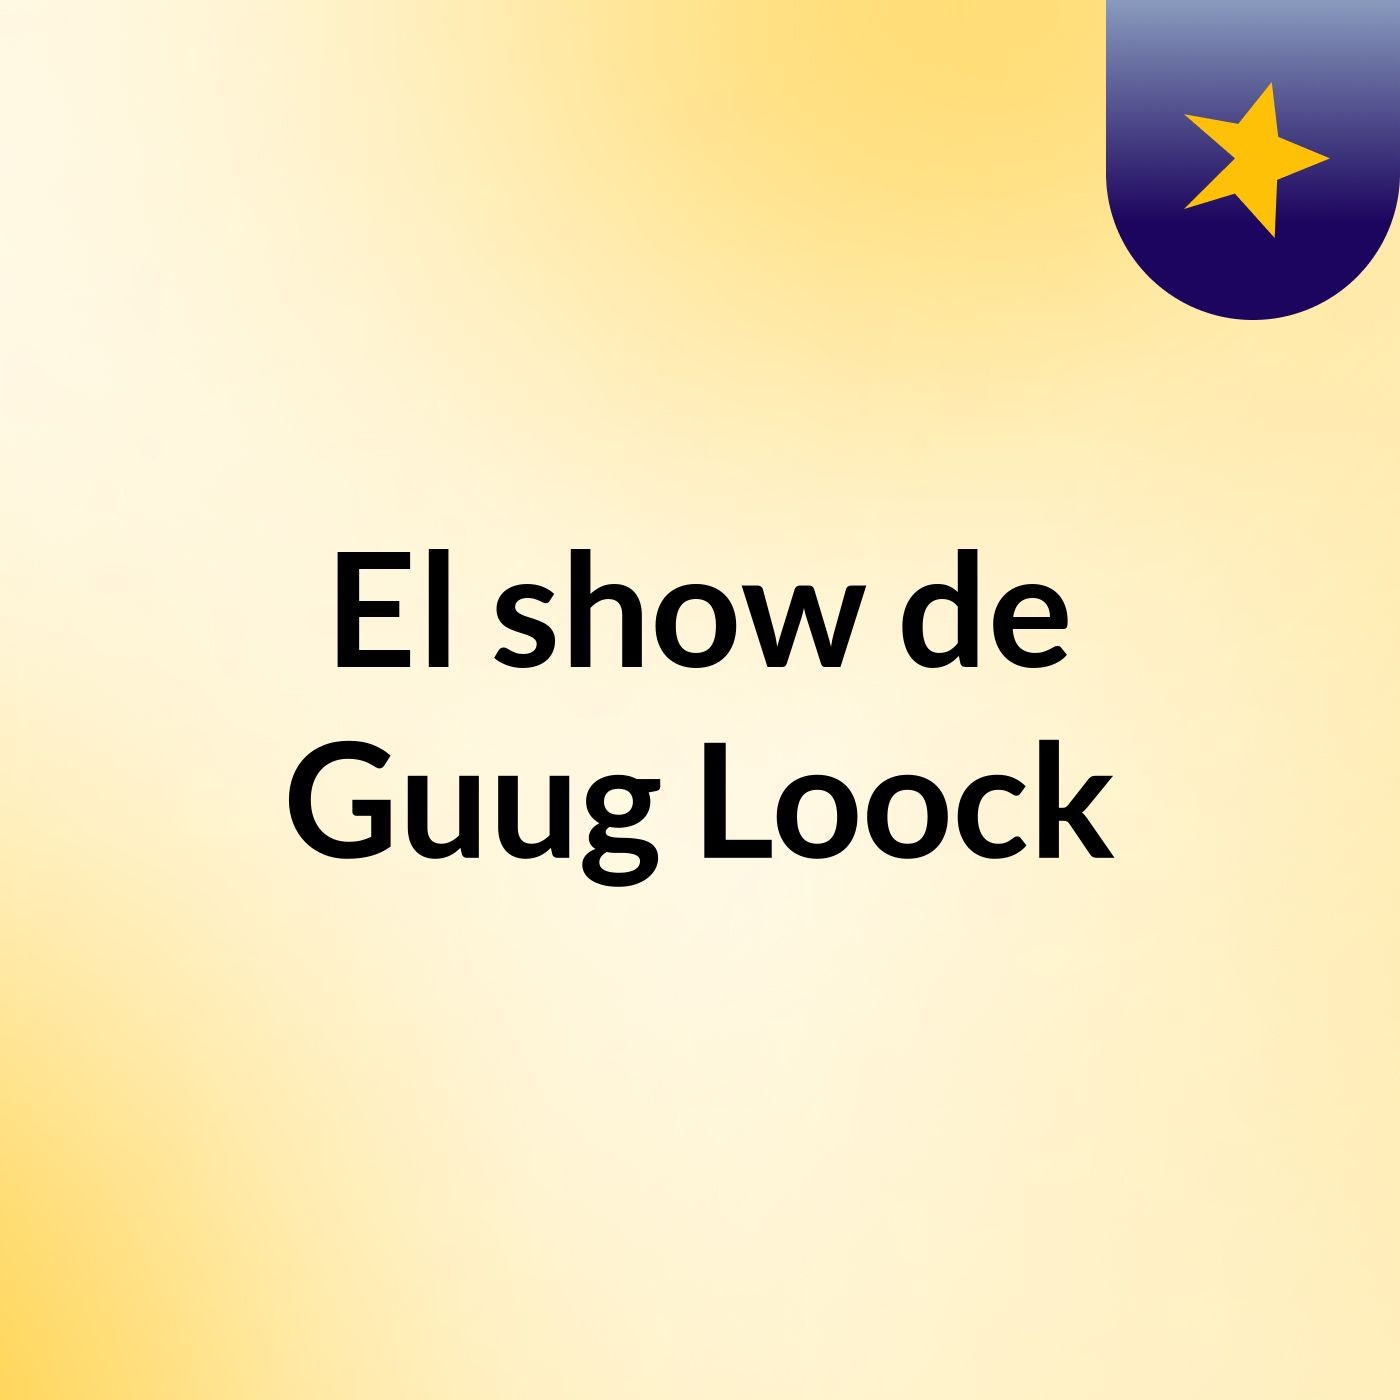 El show de Guug Loock